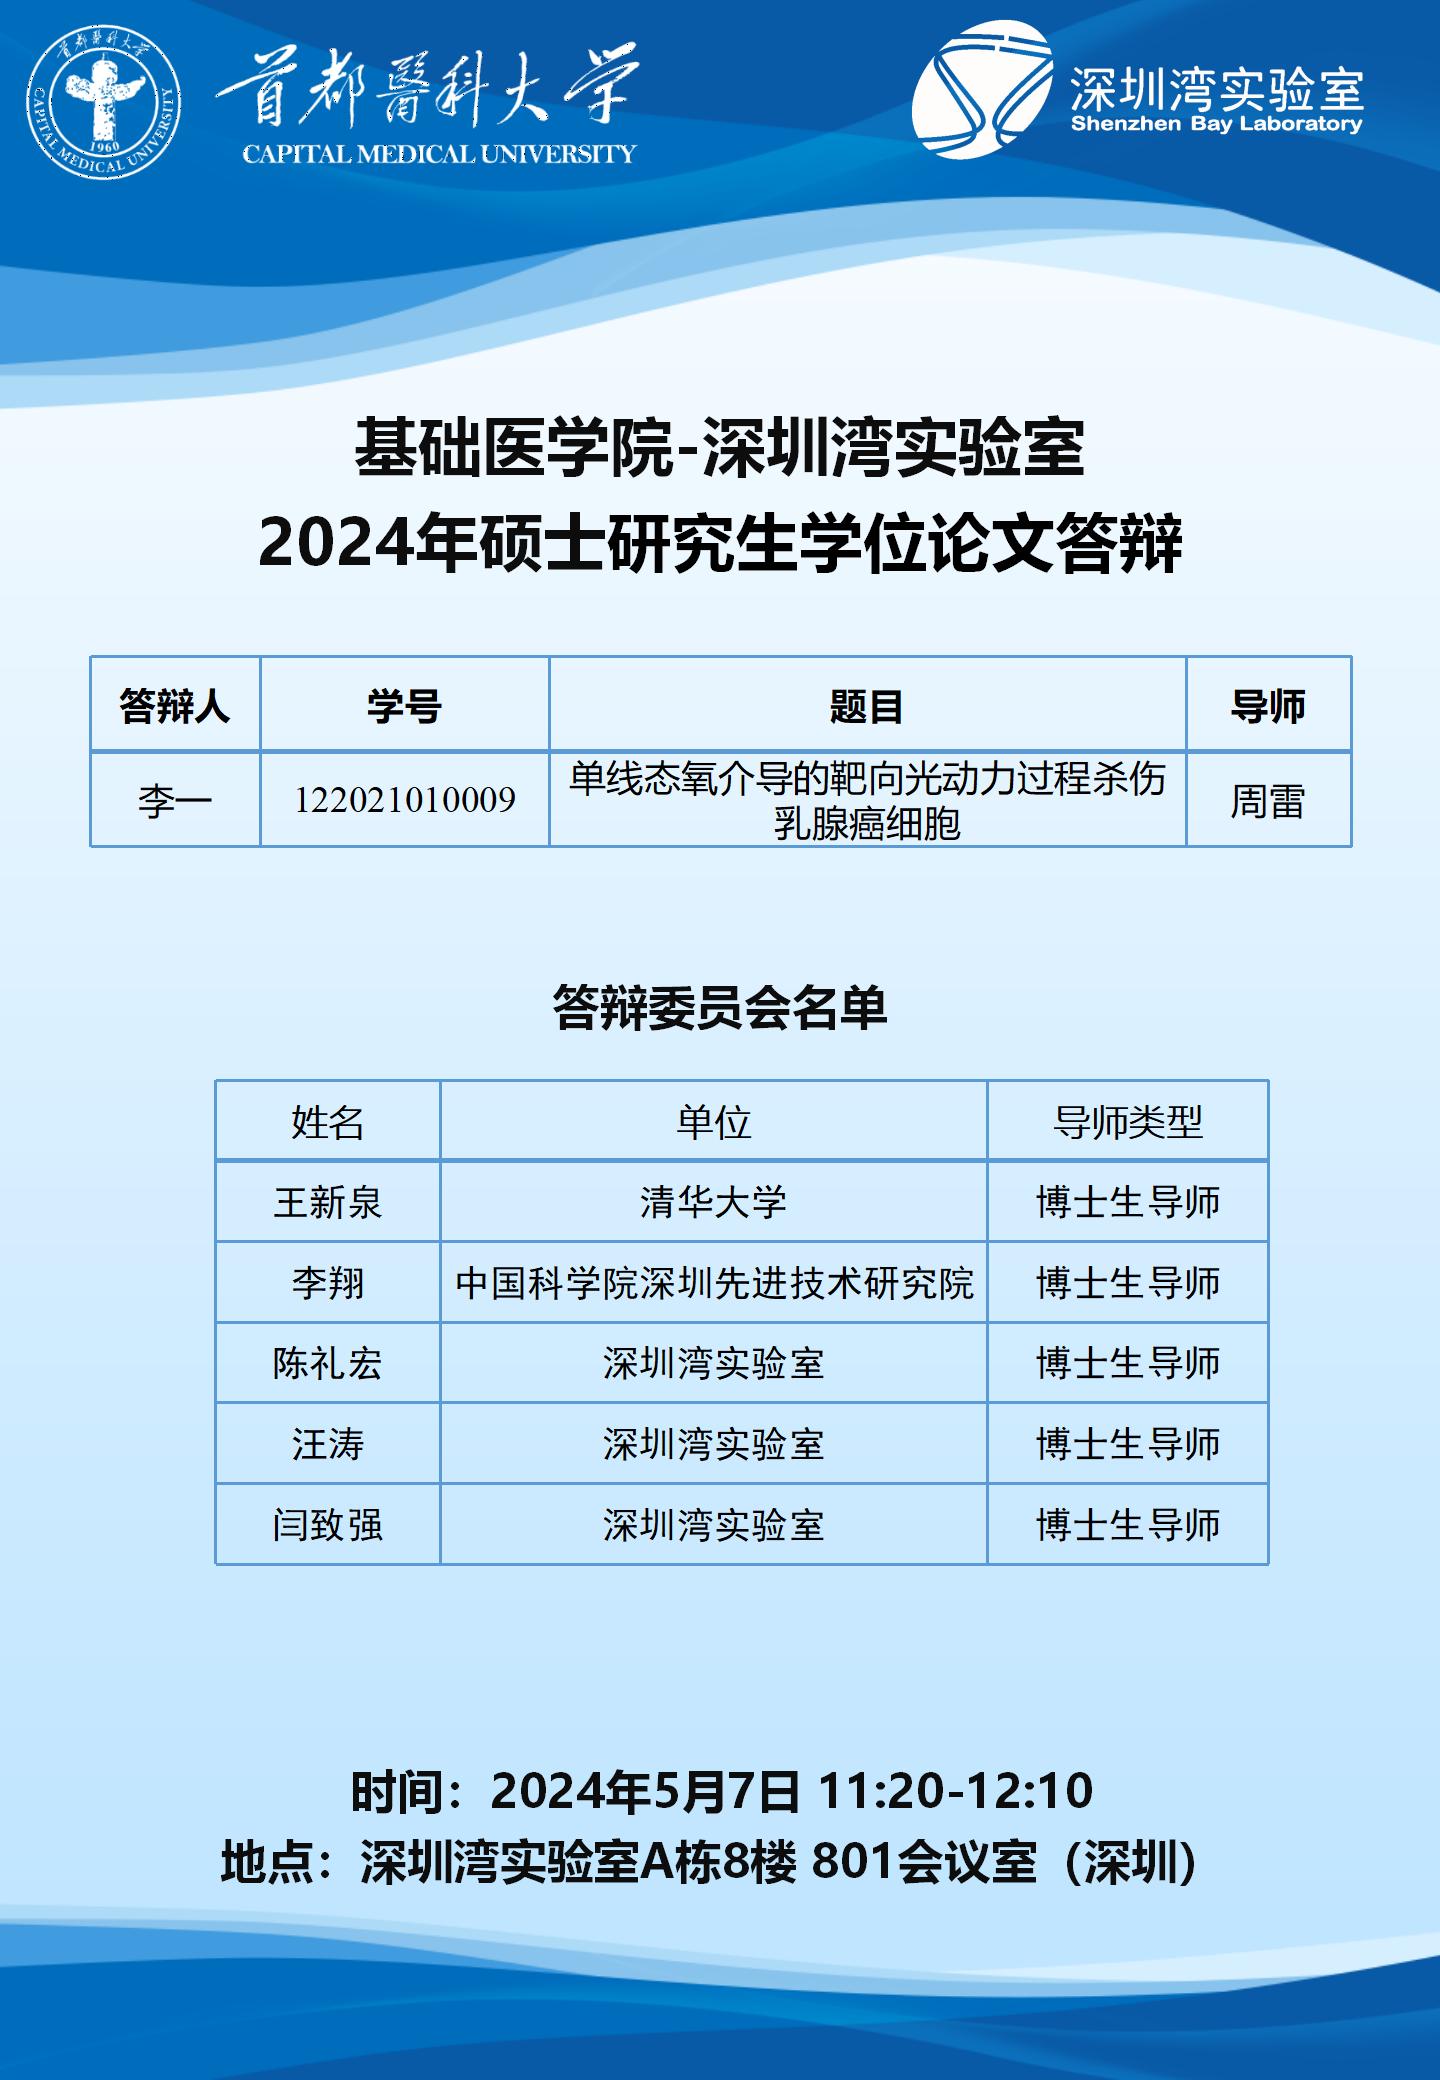 2024.5.7 深圳湾实验室-周雷课题组.jpg